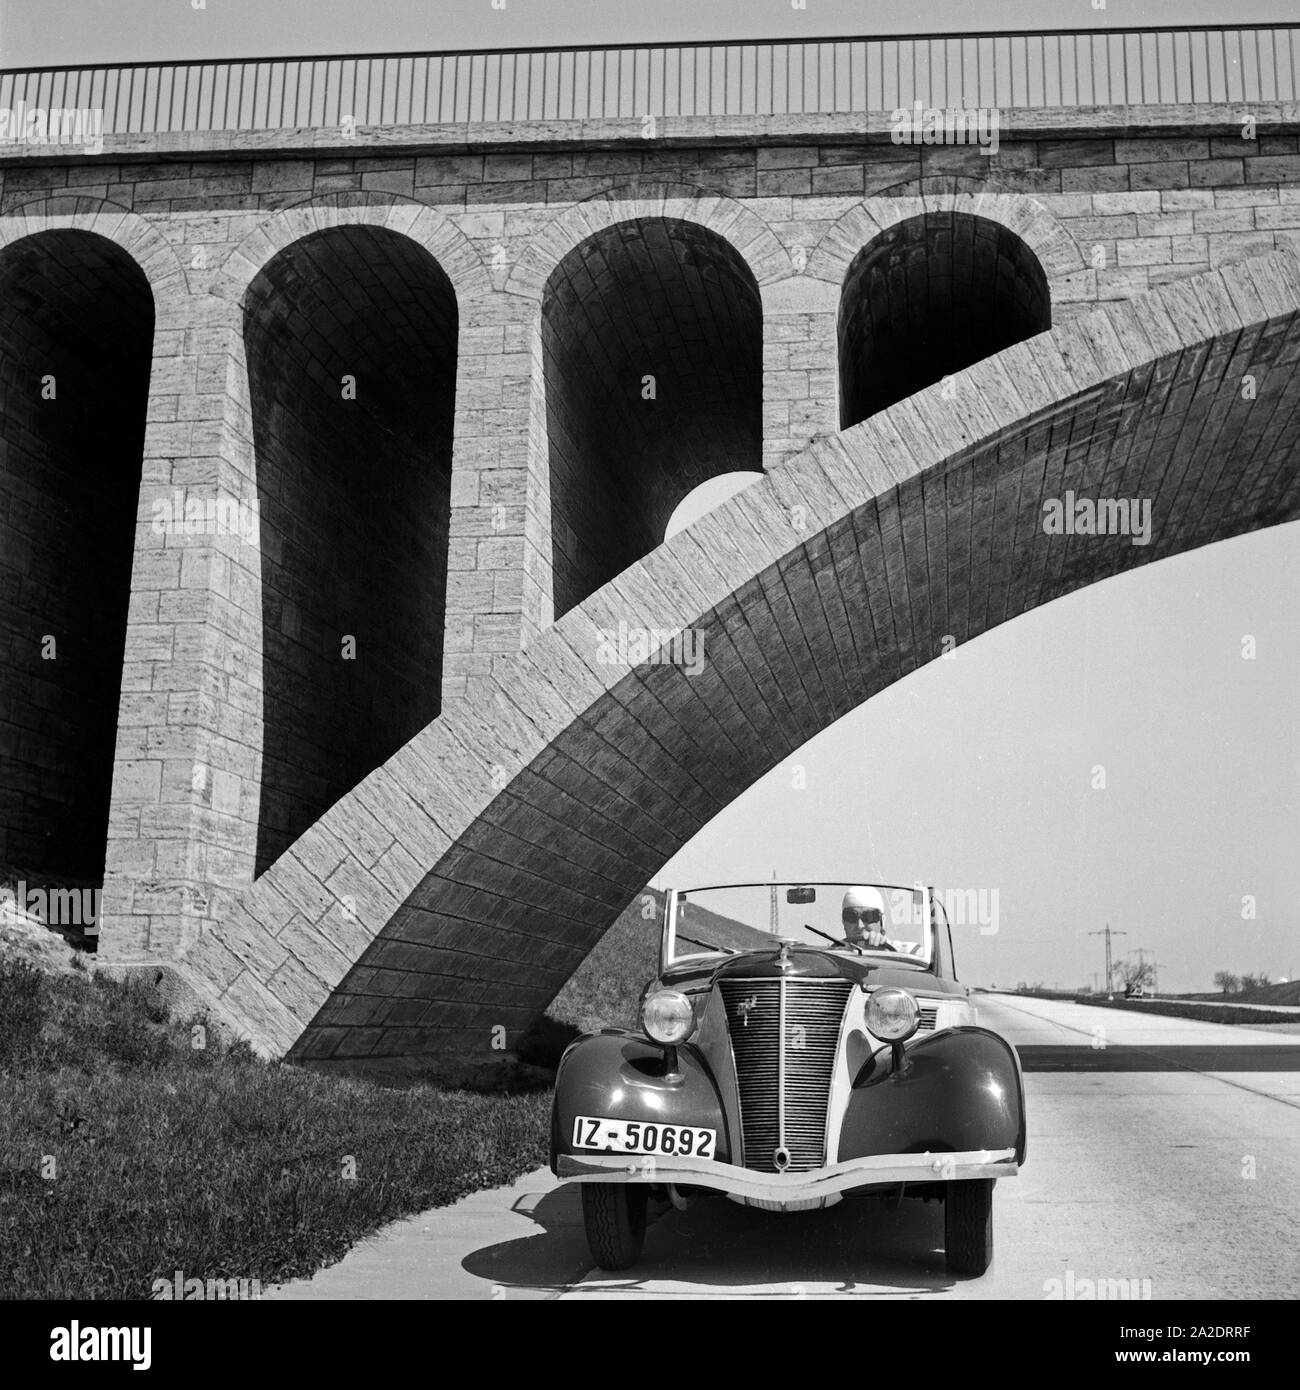 Mit dem Ford Eifel auf unter einer Brücke auf der Reichsautobahn, Deutschland 1930er Jahre. A Ford model Eifel under a bridge at the Reichsautobahn highway, Germany 1930s. Stock Photo